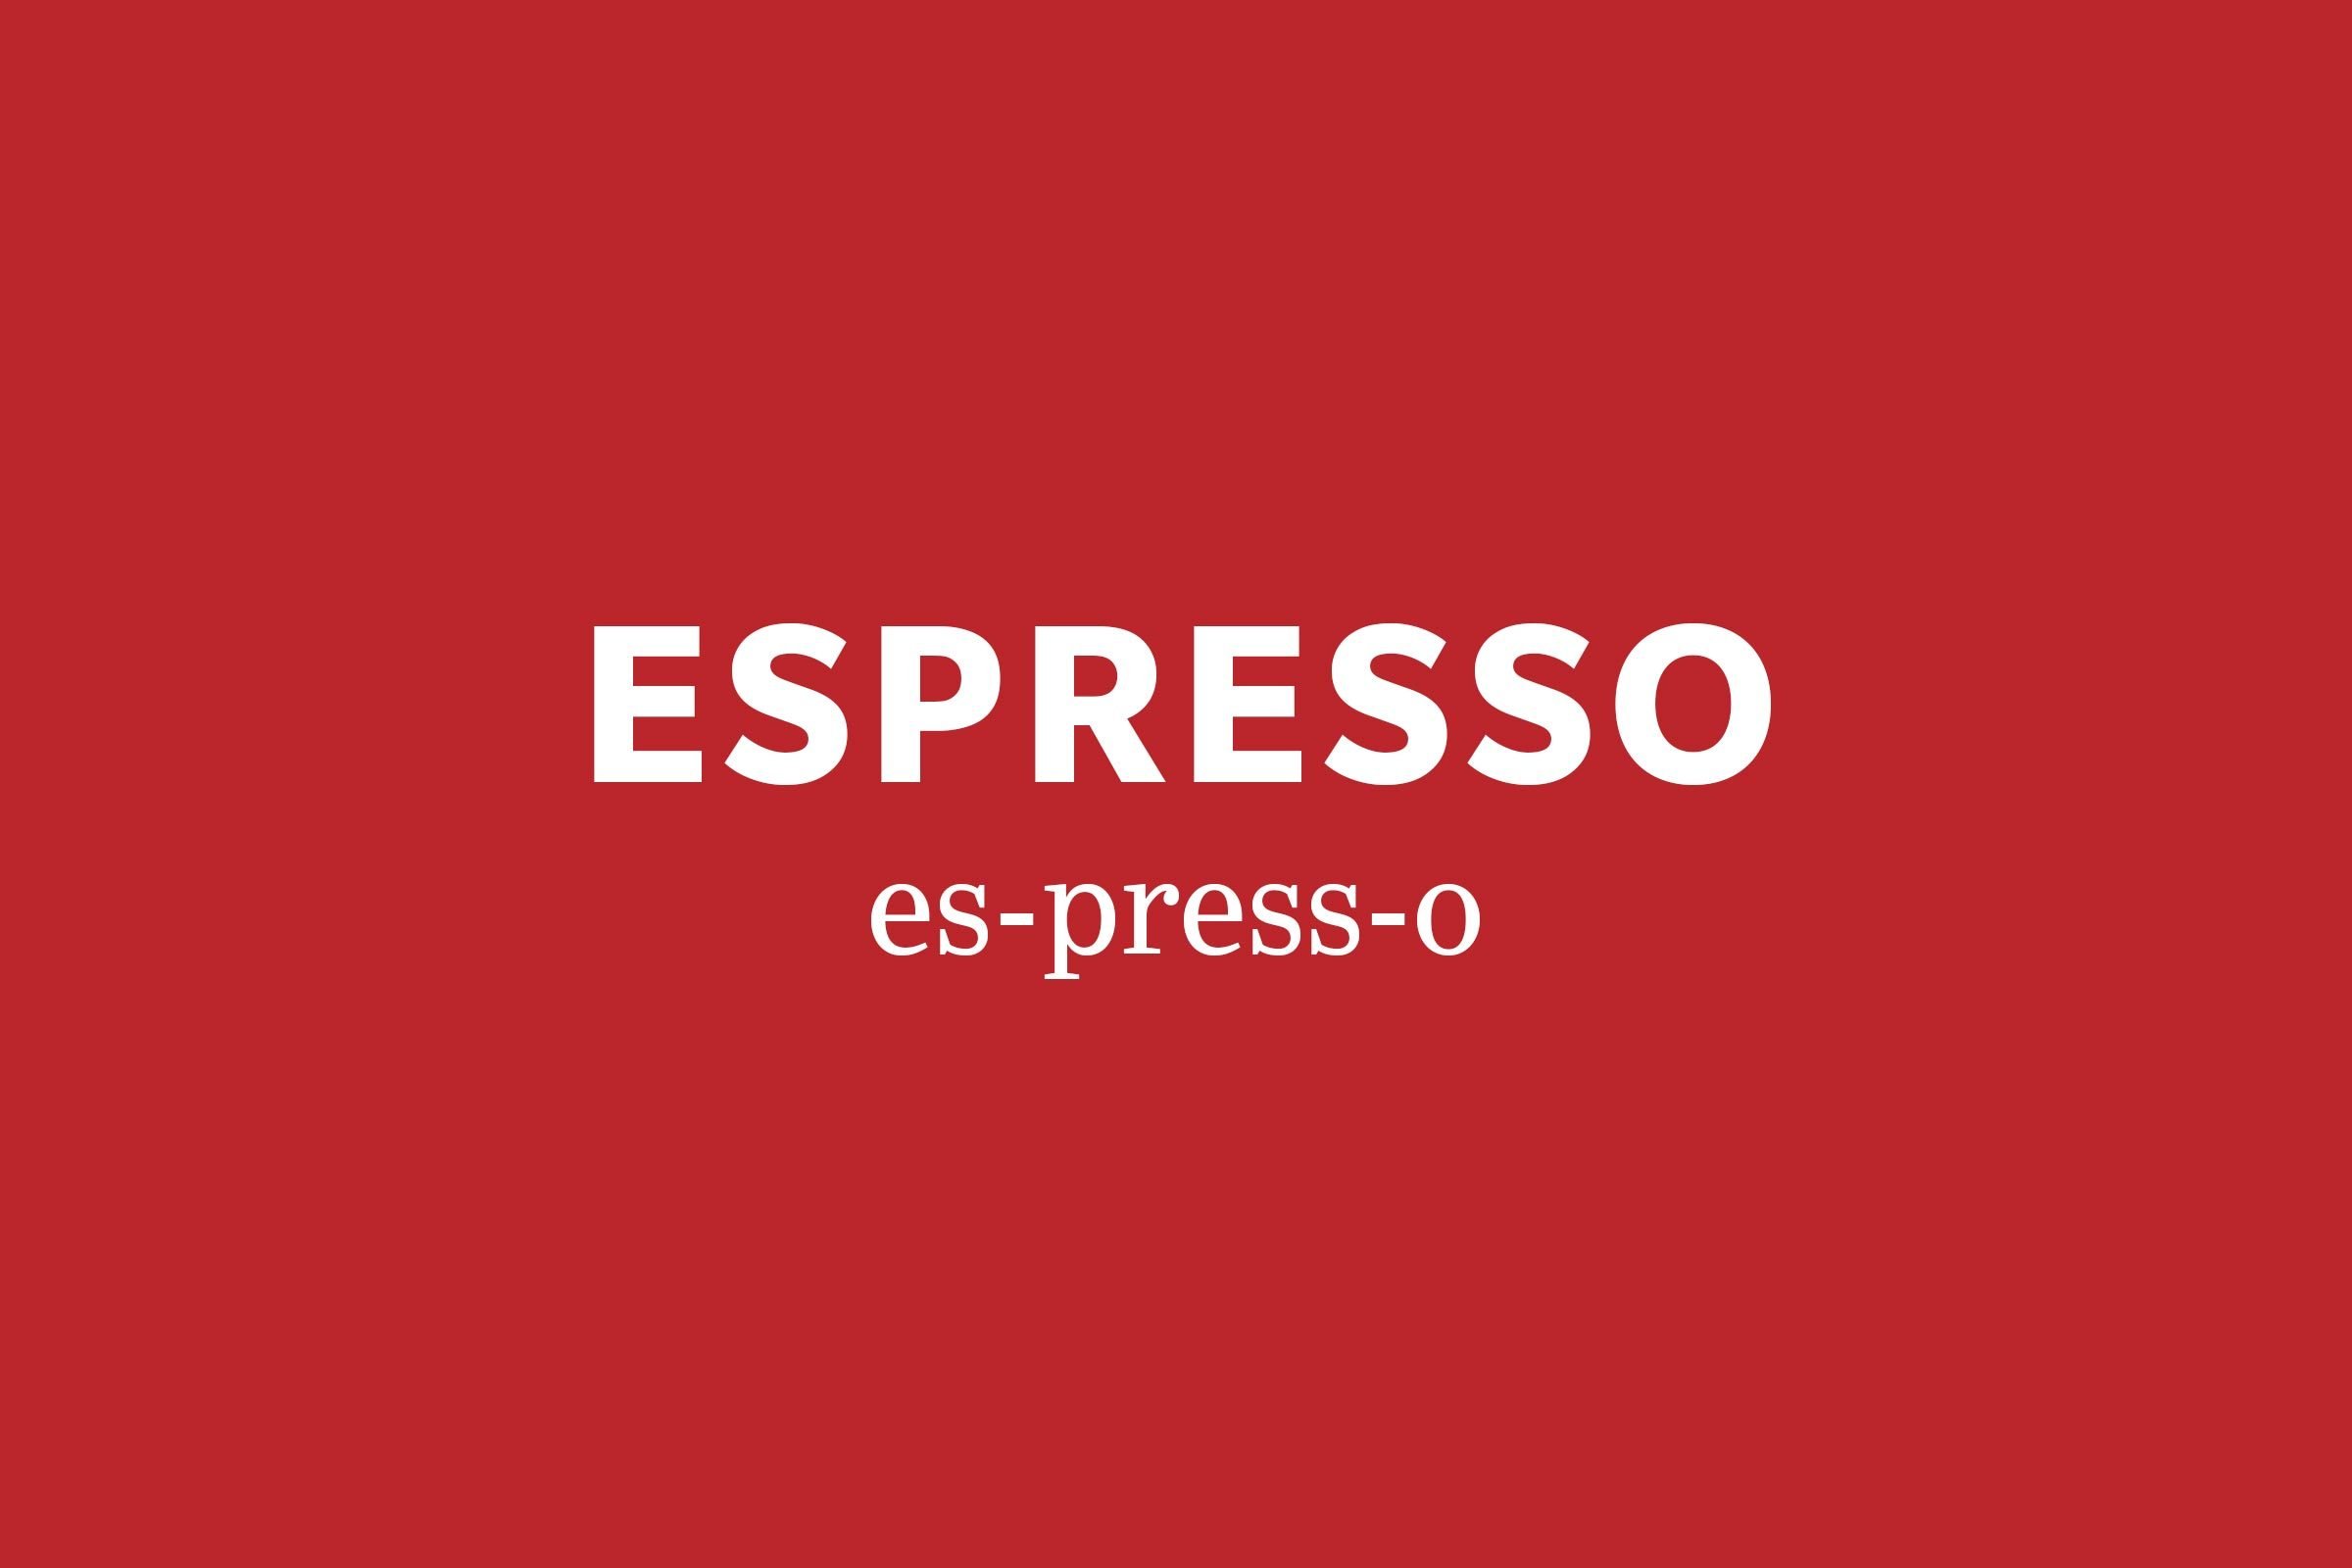 espresso pronunciation